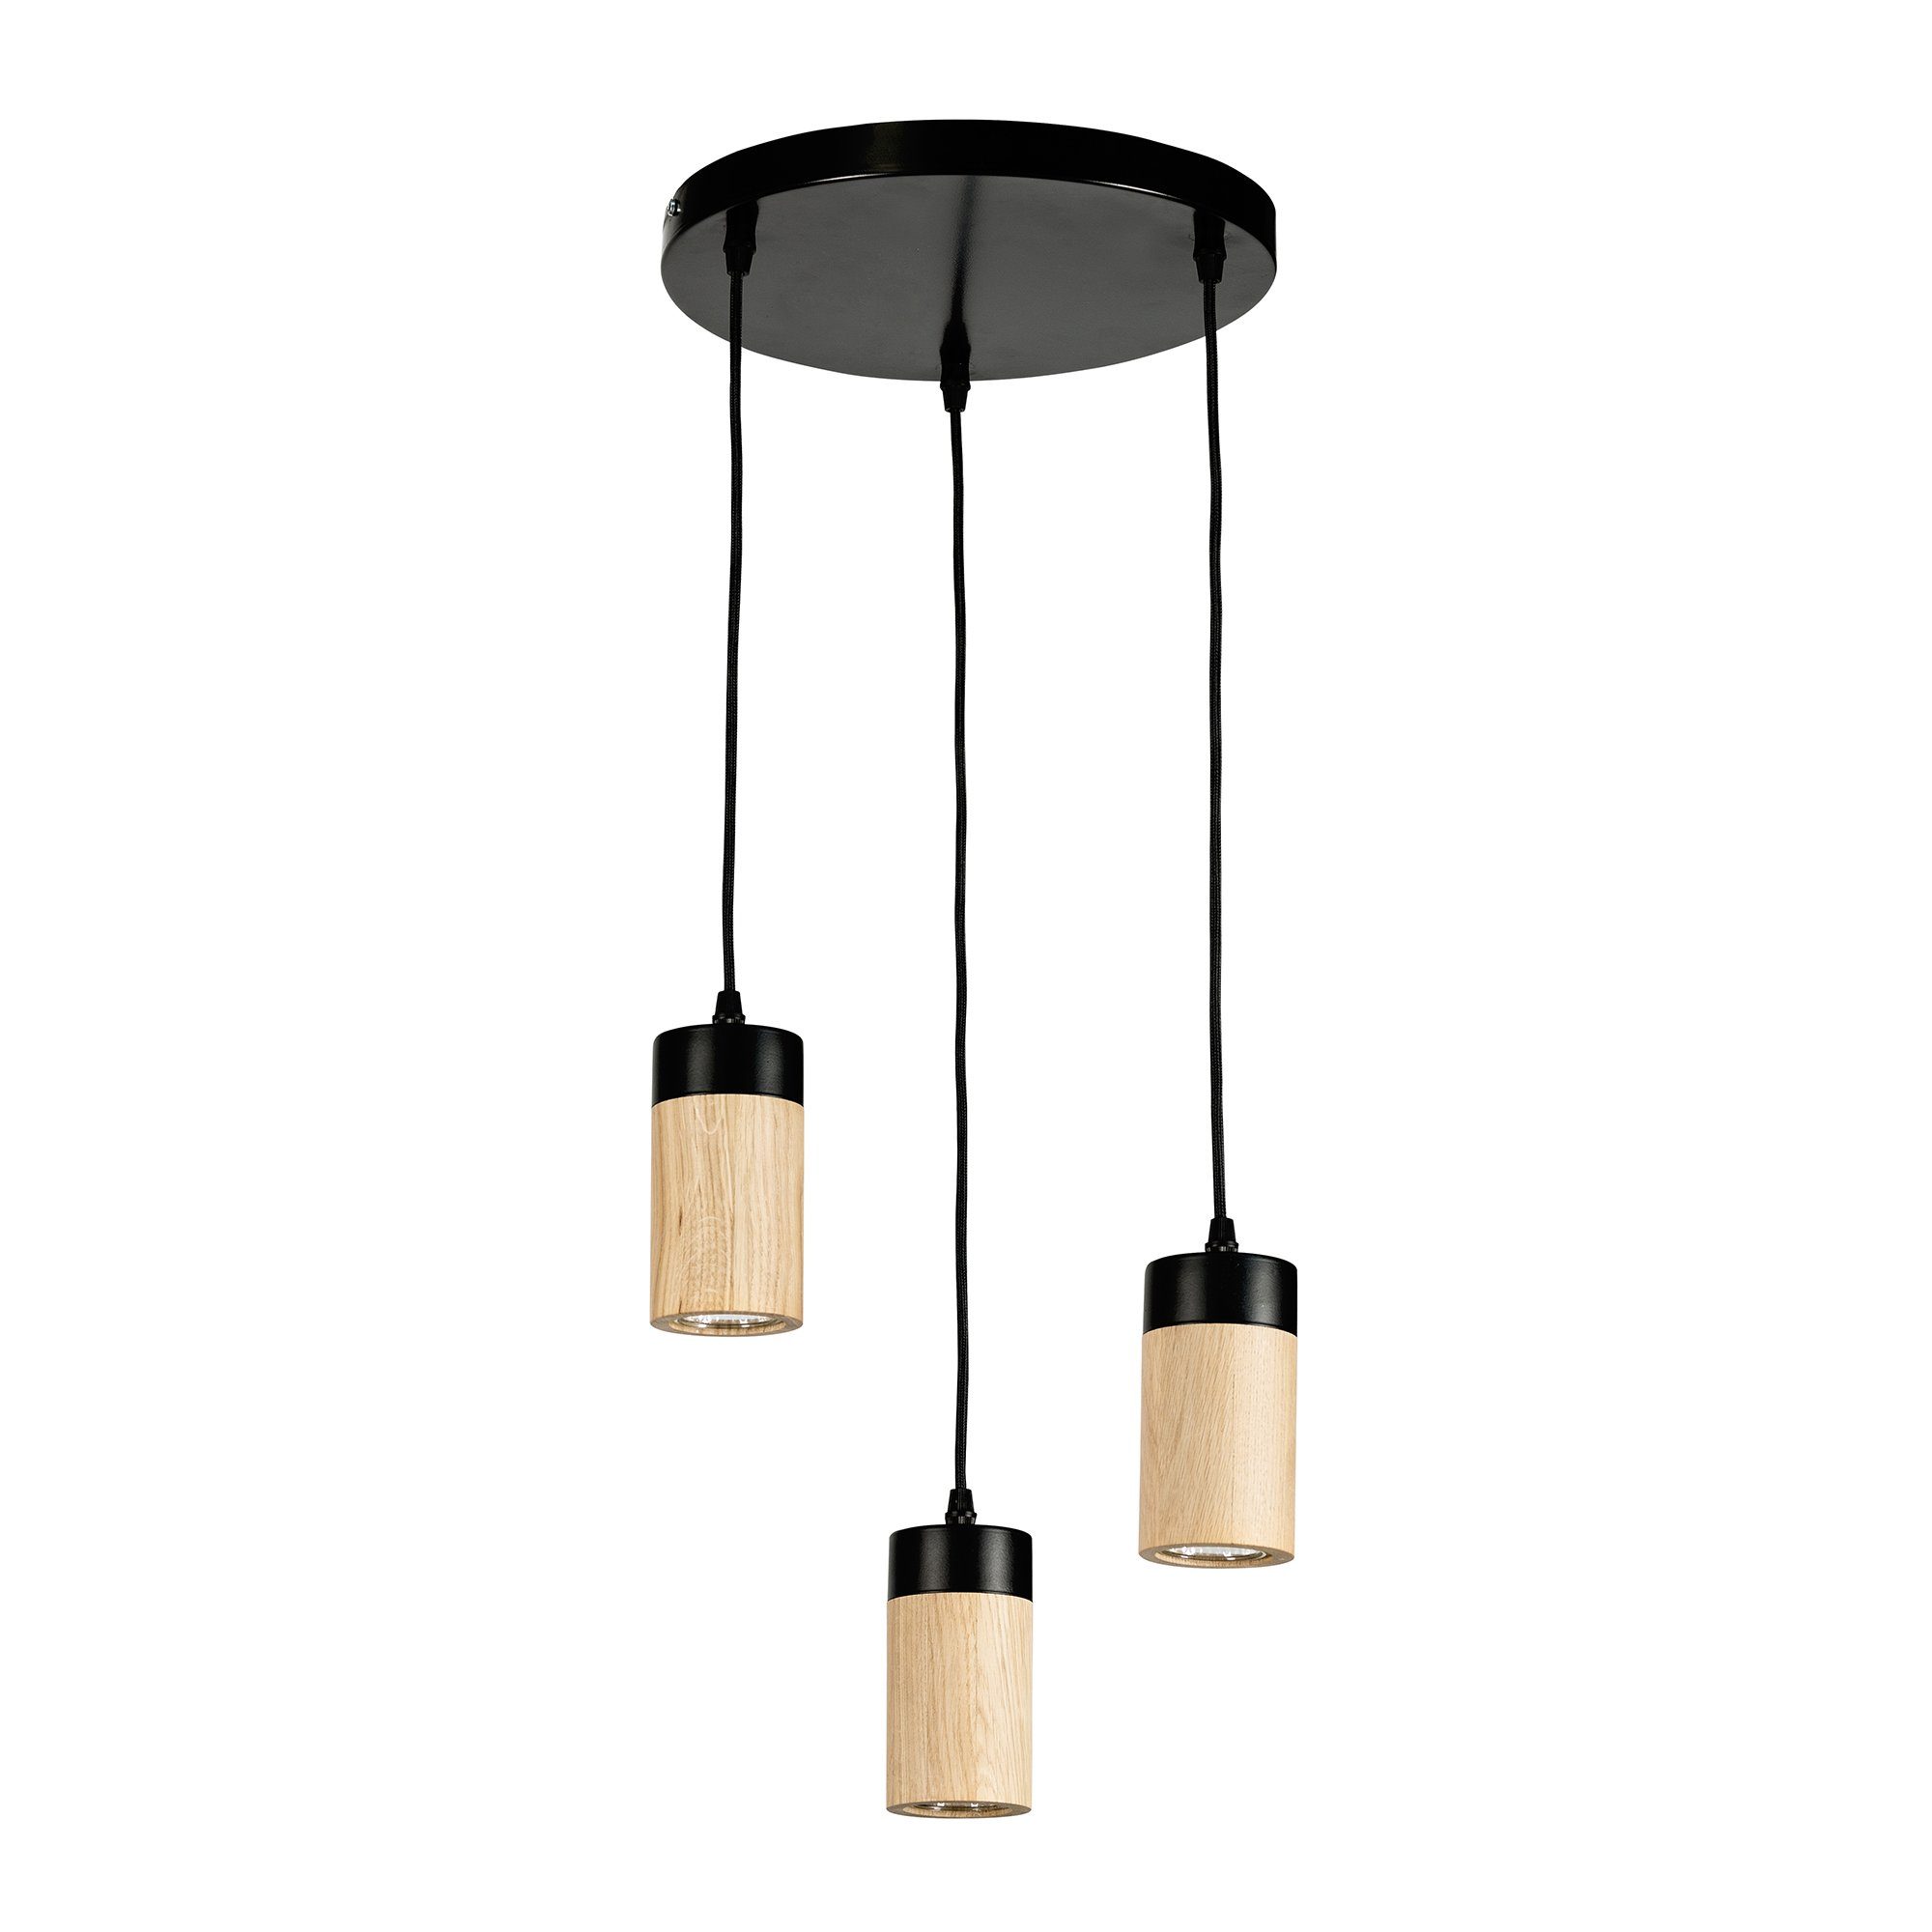 BRITOP LIGHTING Hanglamp ANNICK Hanglamp, van chic eikenhout en metaal, met textielen kabel, ledverlichting inclusief, Made in Europe